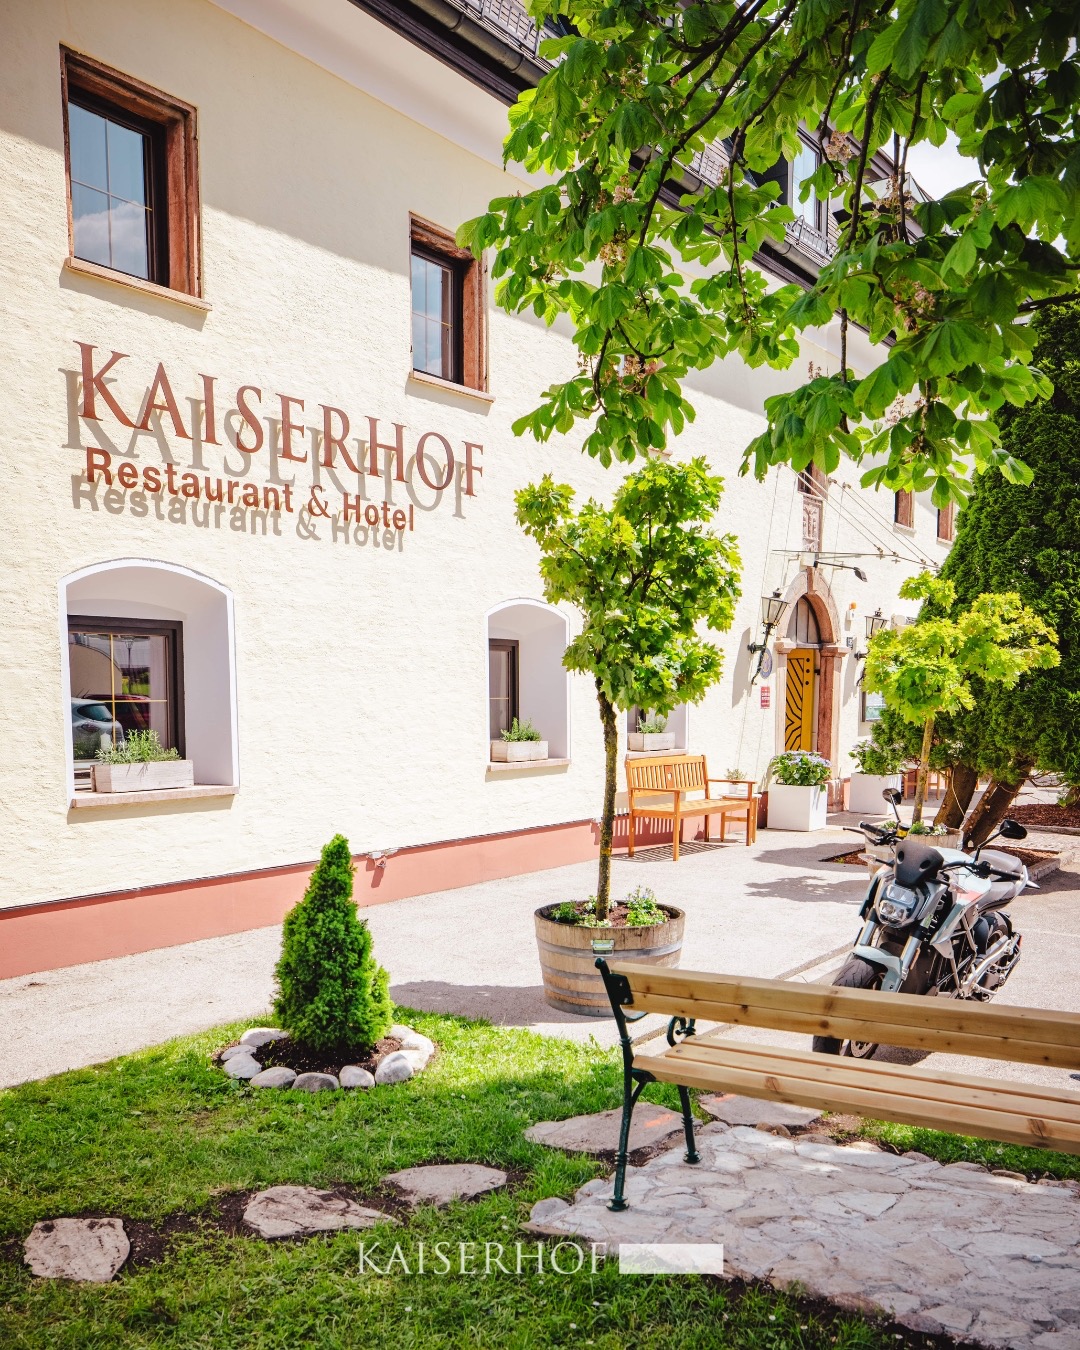 Hotel Restaurant Kaiserhof - Richard Absenger bei Salzburg schmeckt